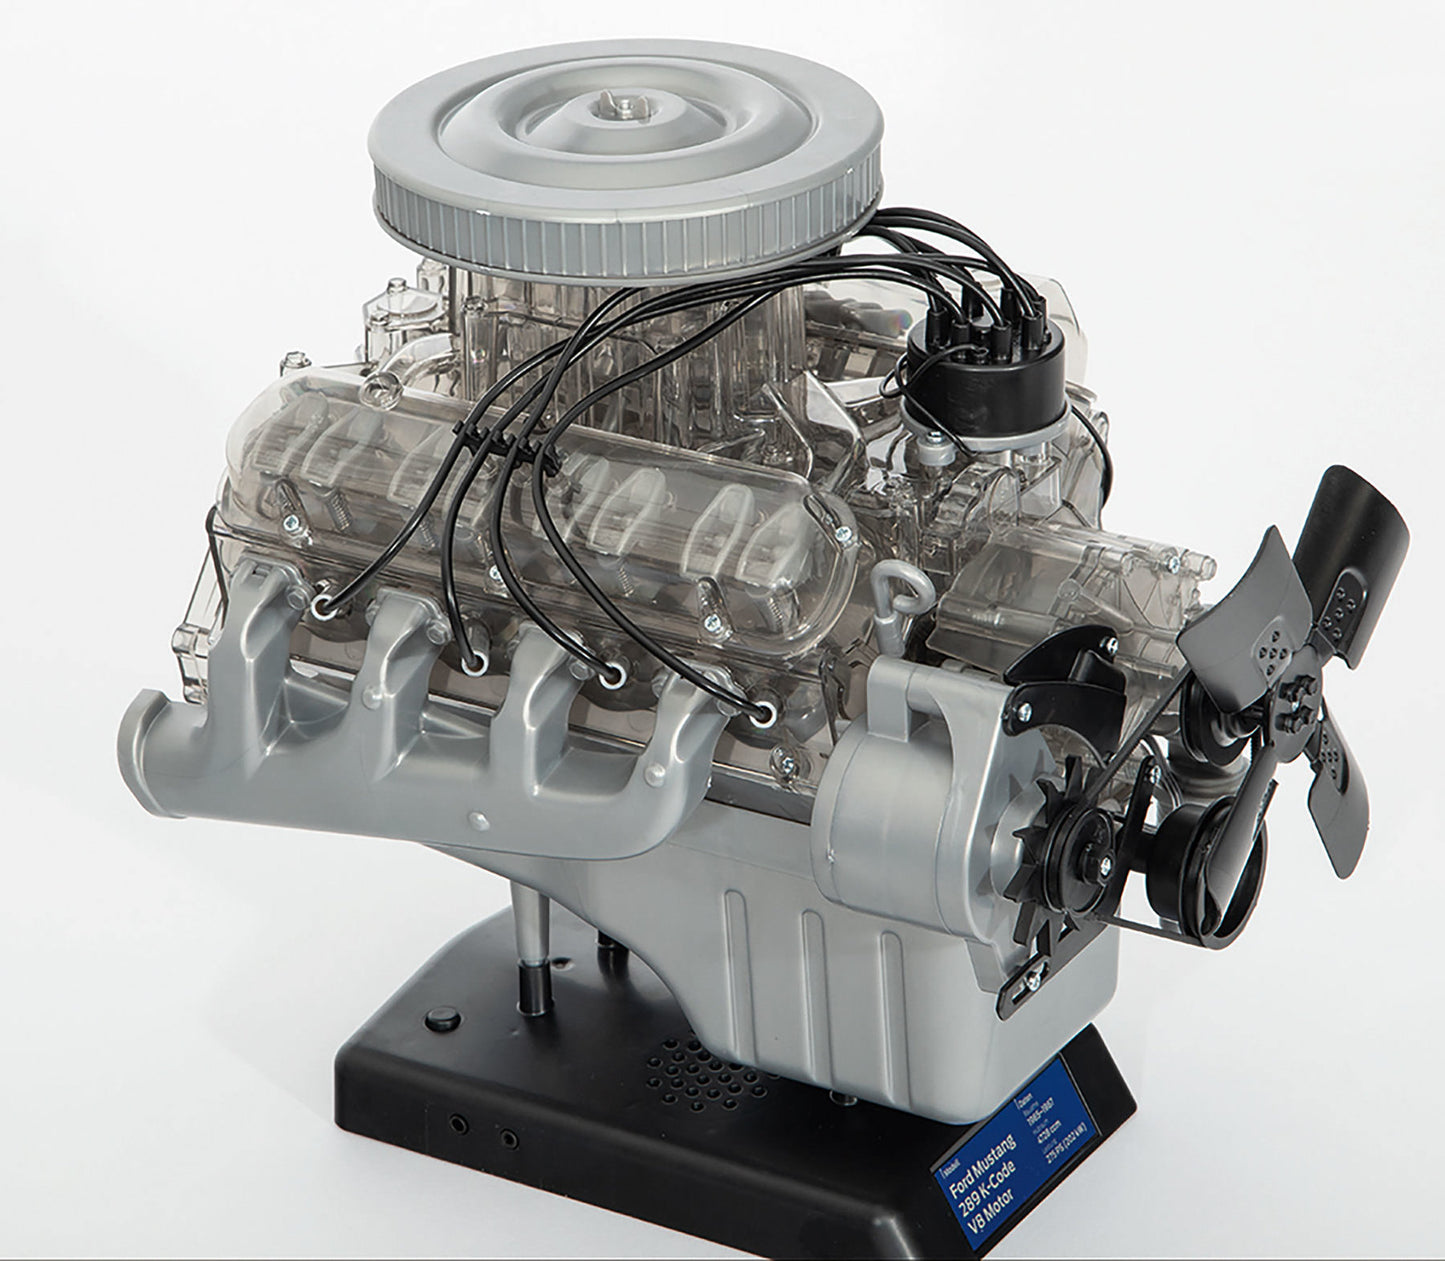 Ford Mustang V8 Engine Model Kit - Build Your Own V8 Engine